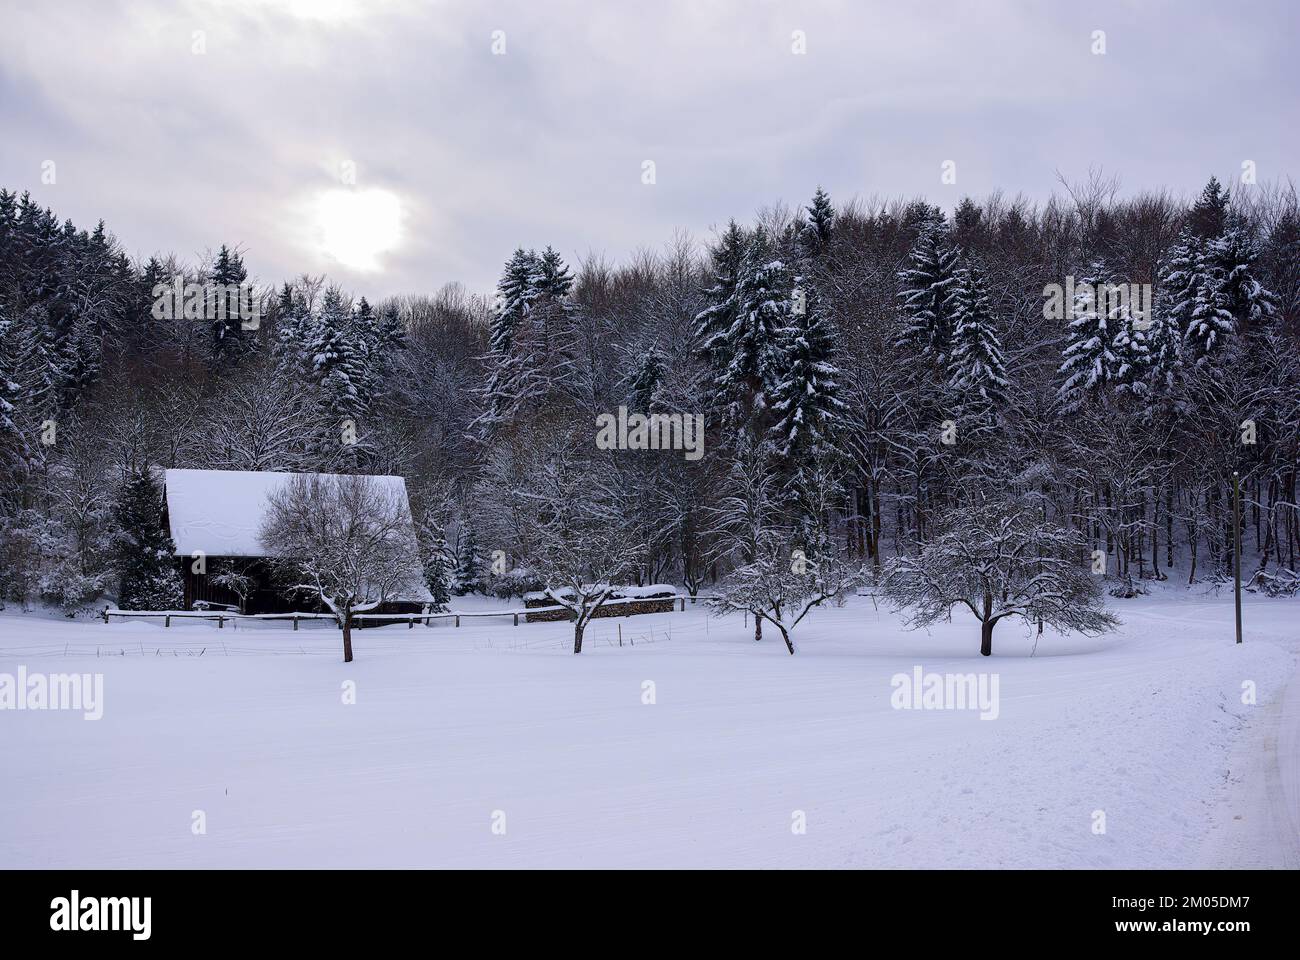 Profondo paesaggio innevato di un prato vinoso, con una capanna di legno ai margini e una foresta invernale che si estende. Foto Stock